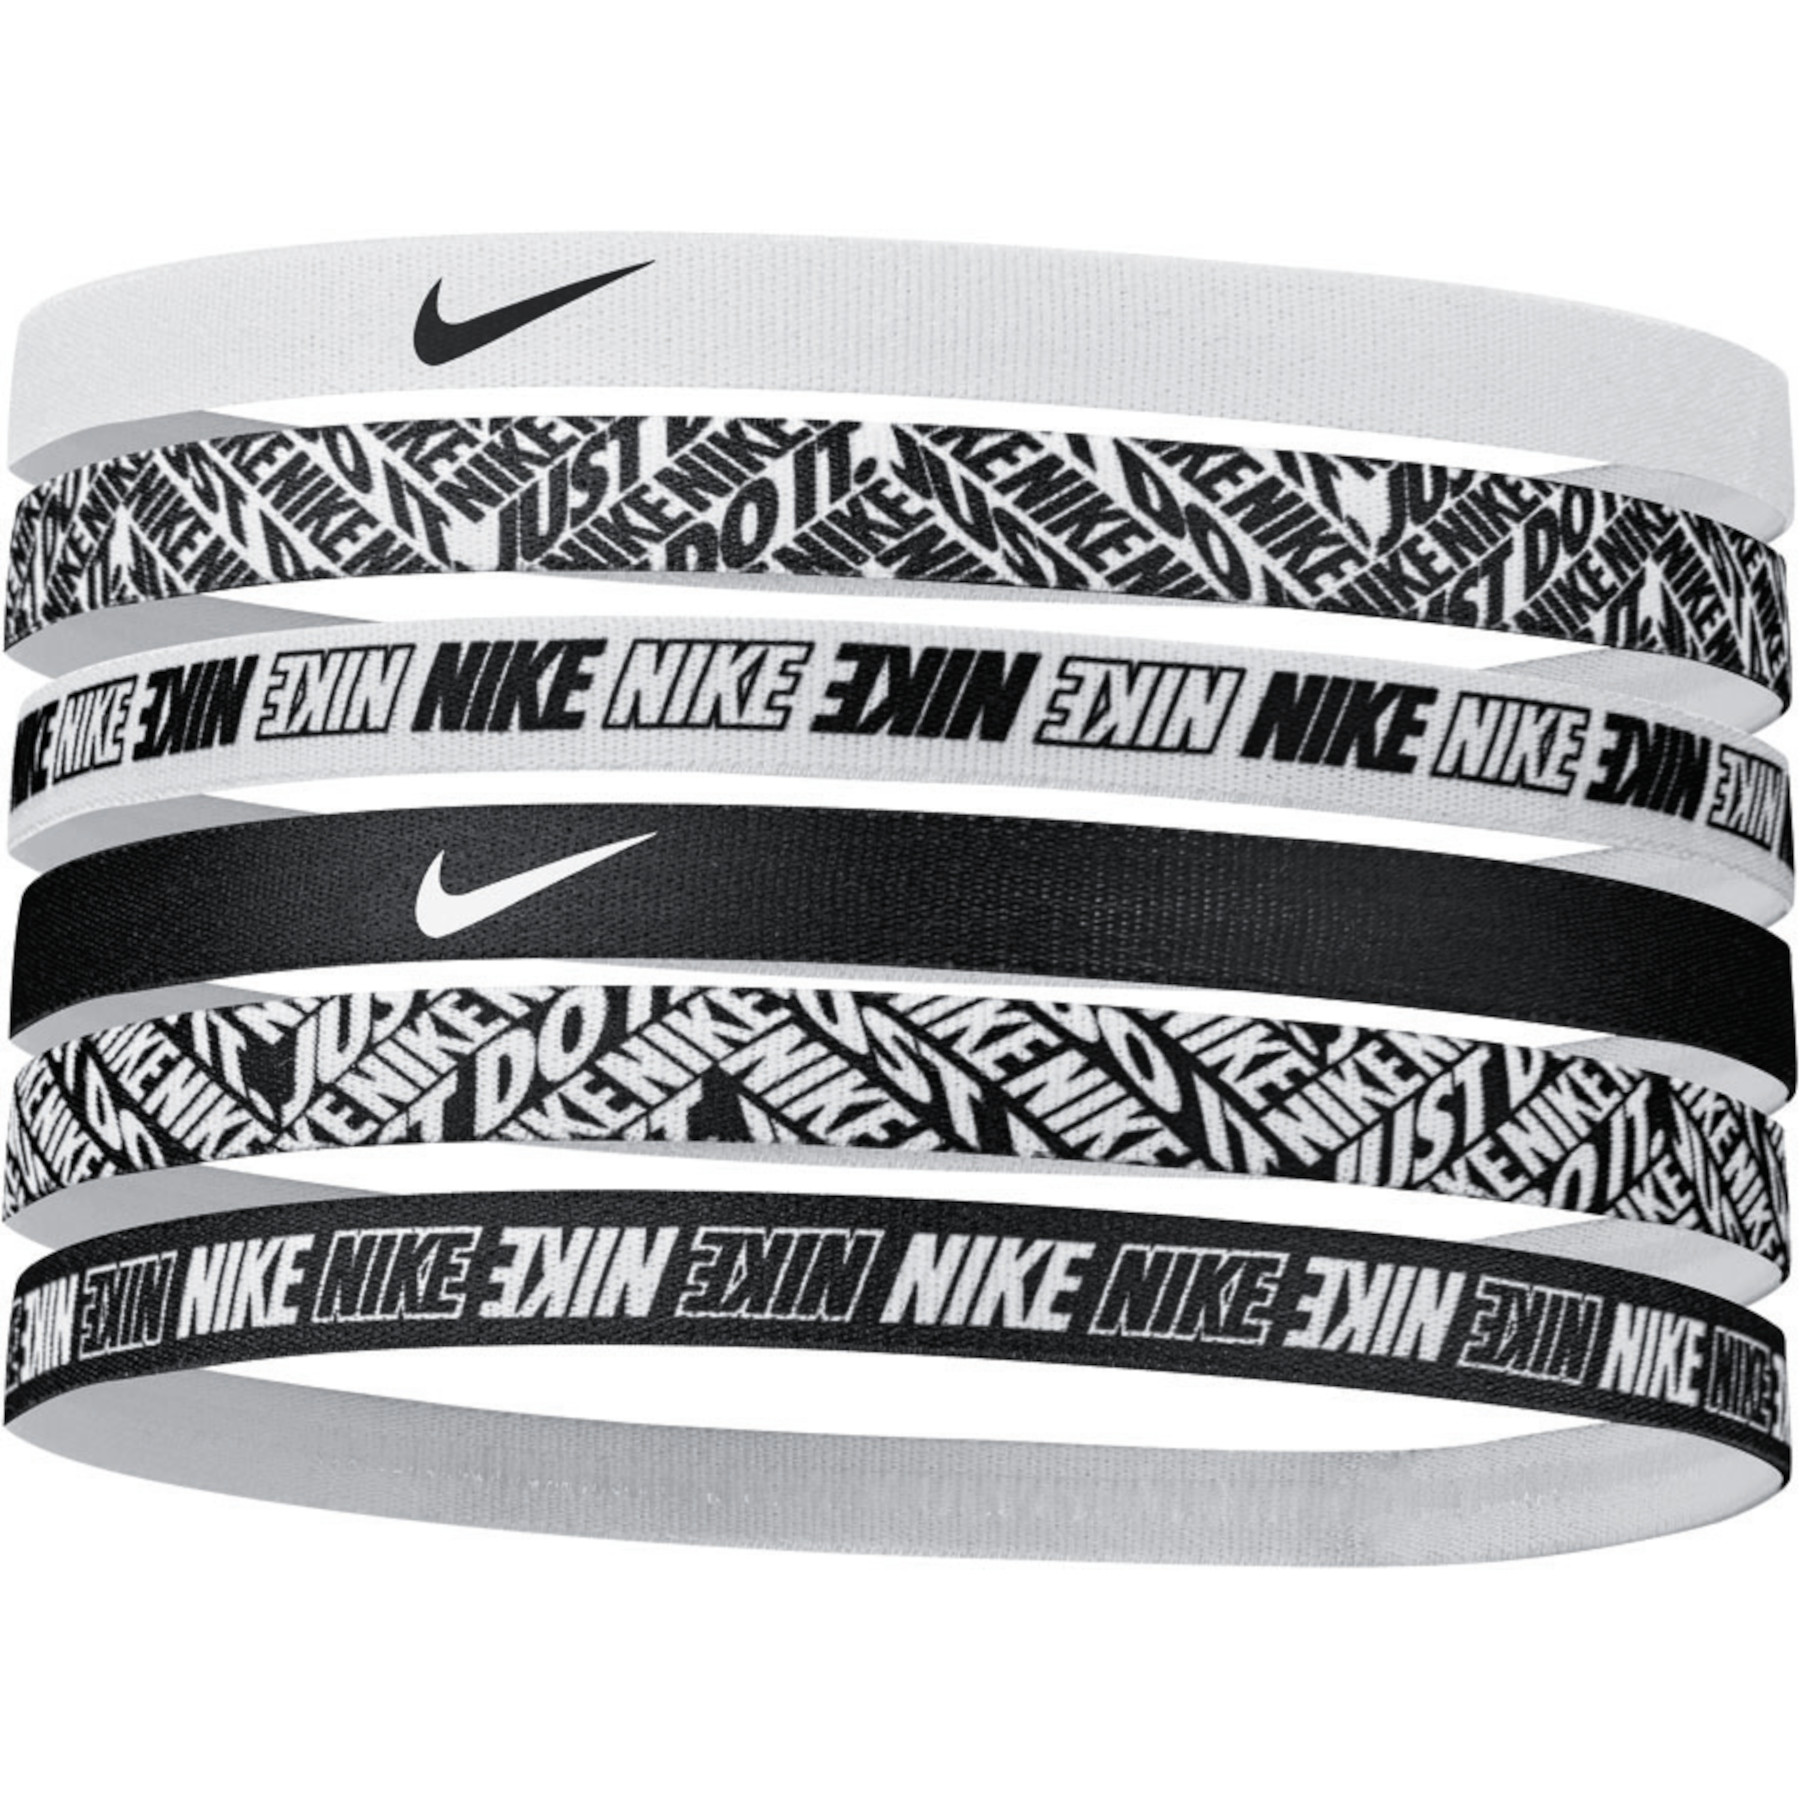 Bild von Nike Printed Haarband - 6 Stück - black/white 010